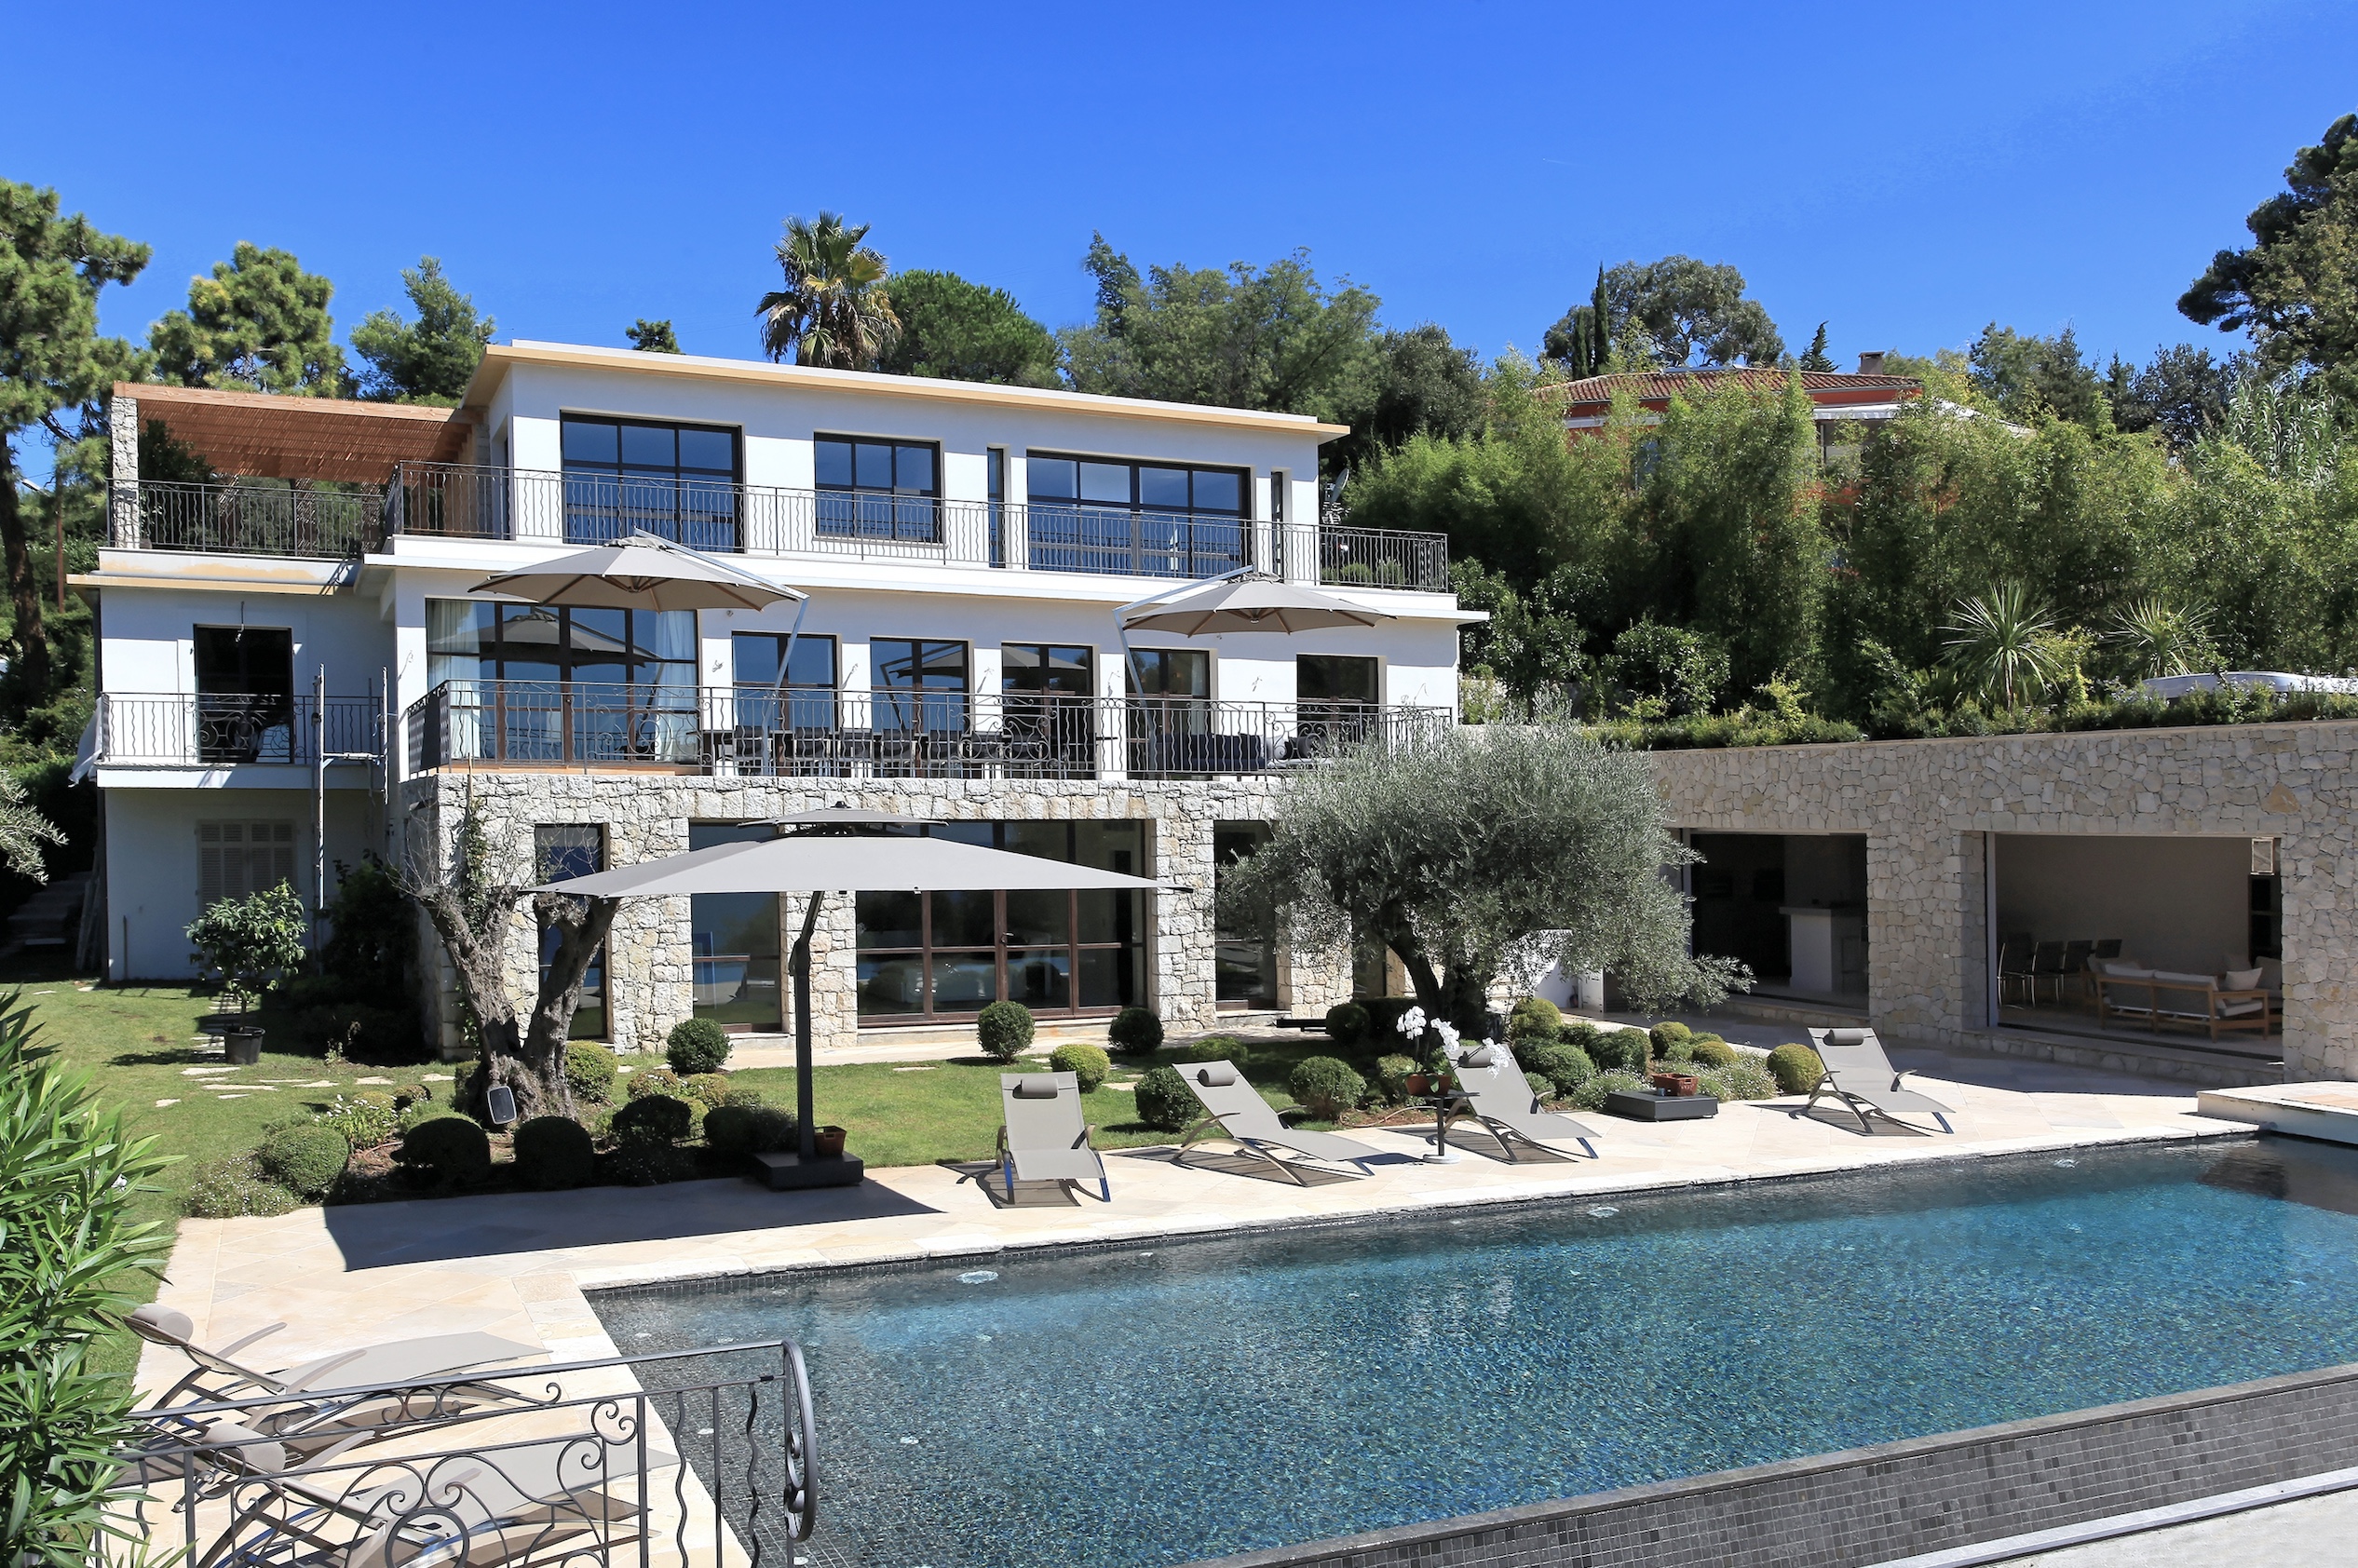 Magrey & Sons hjälper dig att hitta ett hus på franska Rivieran